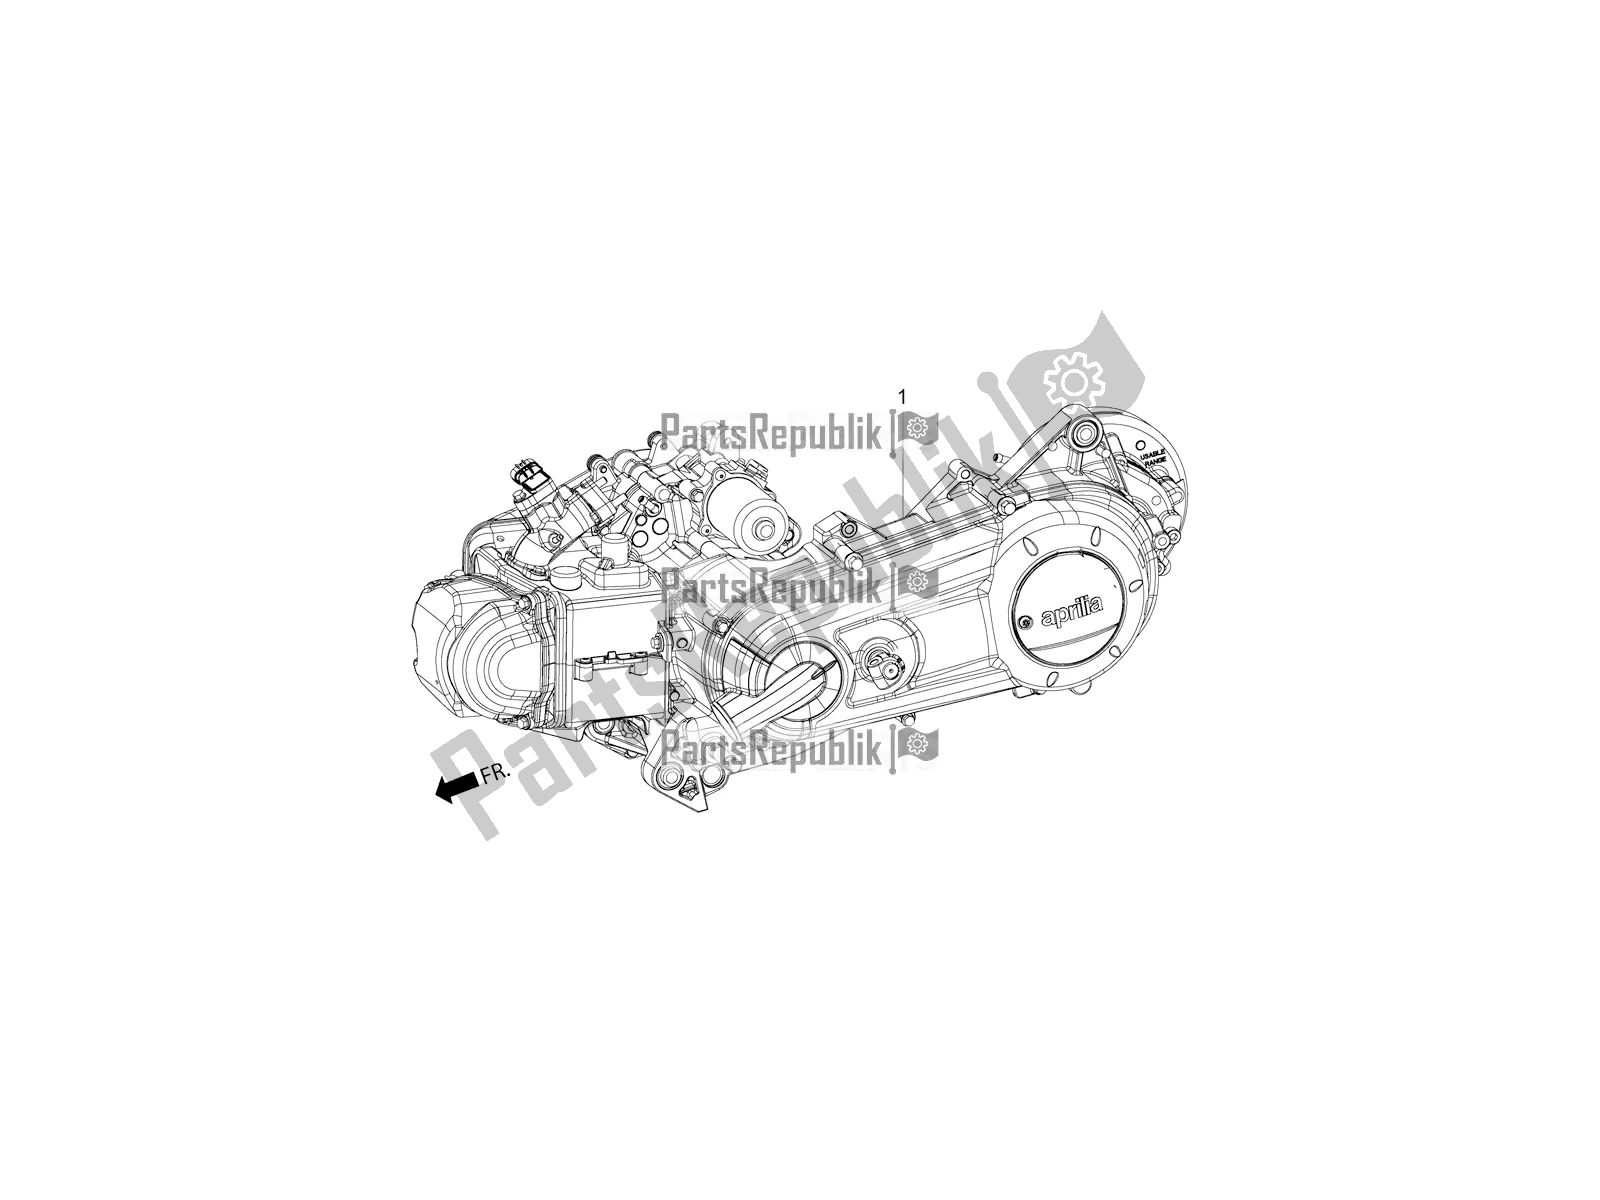 Toutes les pièces pour le Complete Engine du Aprilia SR Motard 150 ABS Racer Carb. Latam 2018